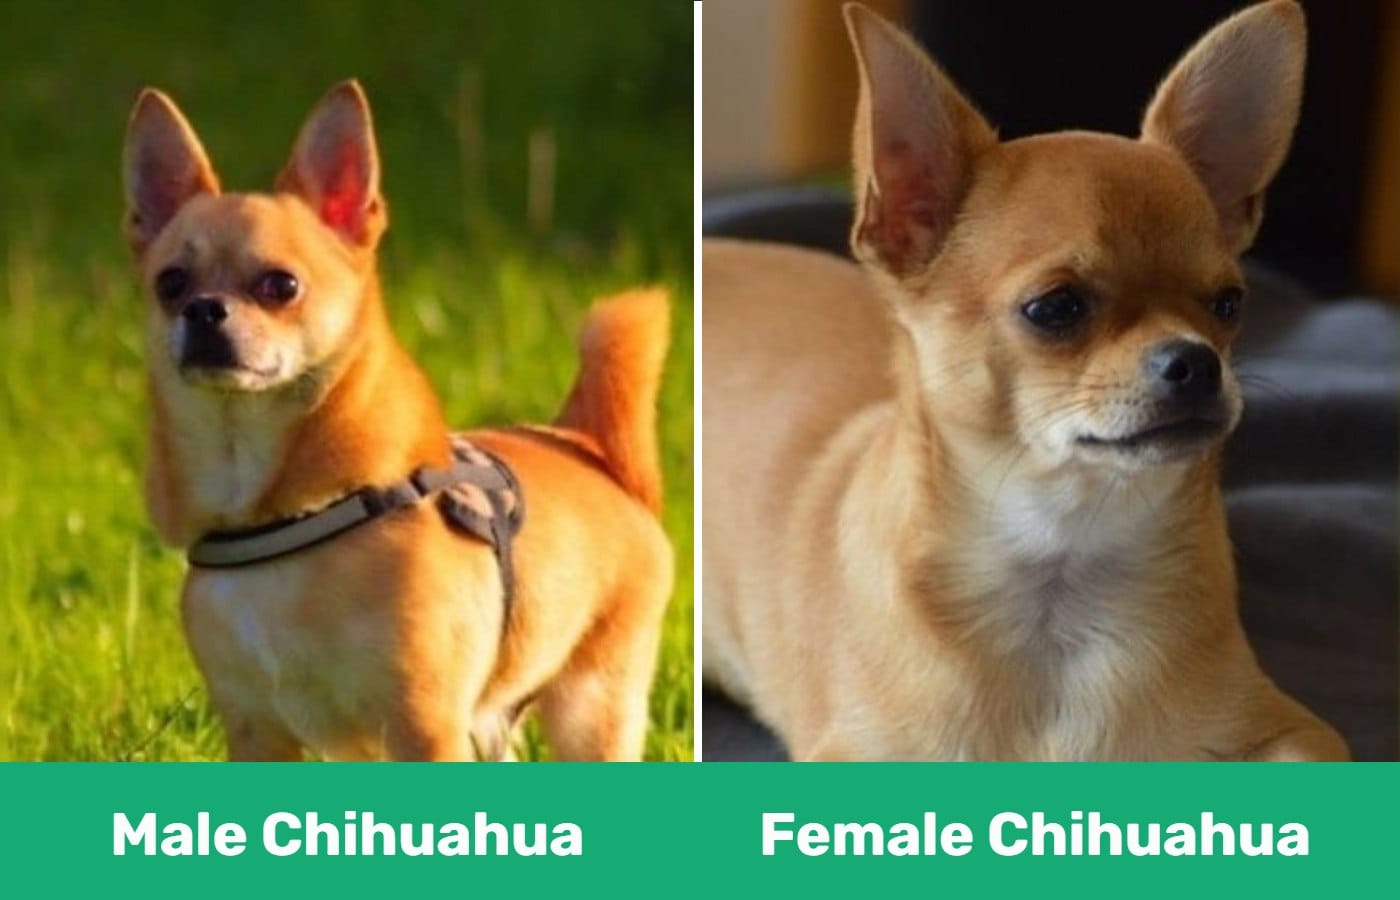 Chihuahuas at a glance